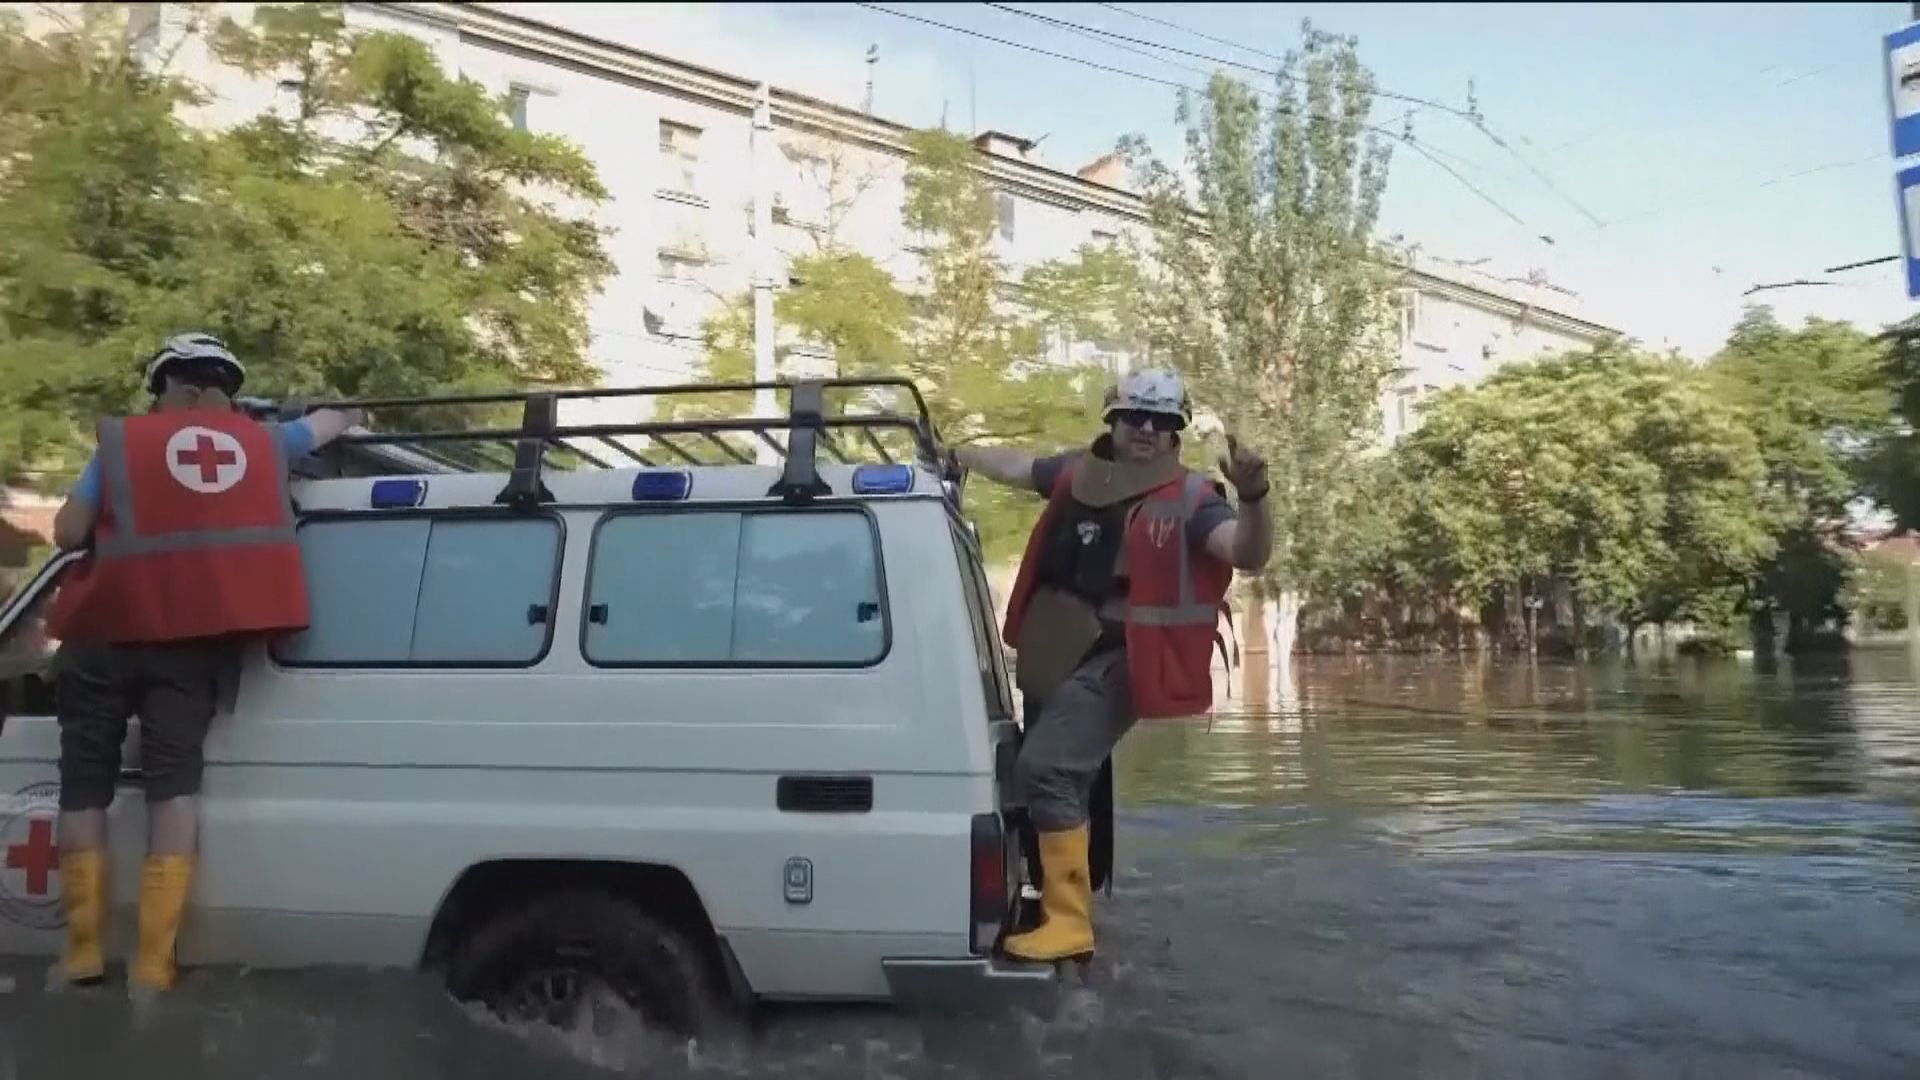 烏克蘭赫爾松水壩受損 中方籲保護平民和民用設施安全